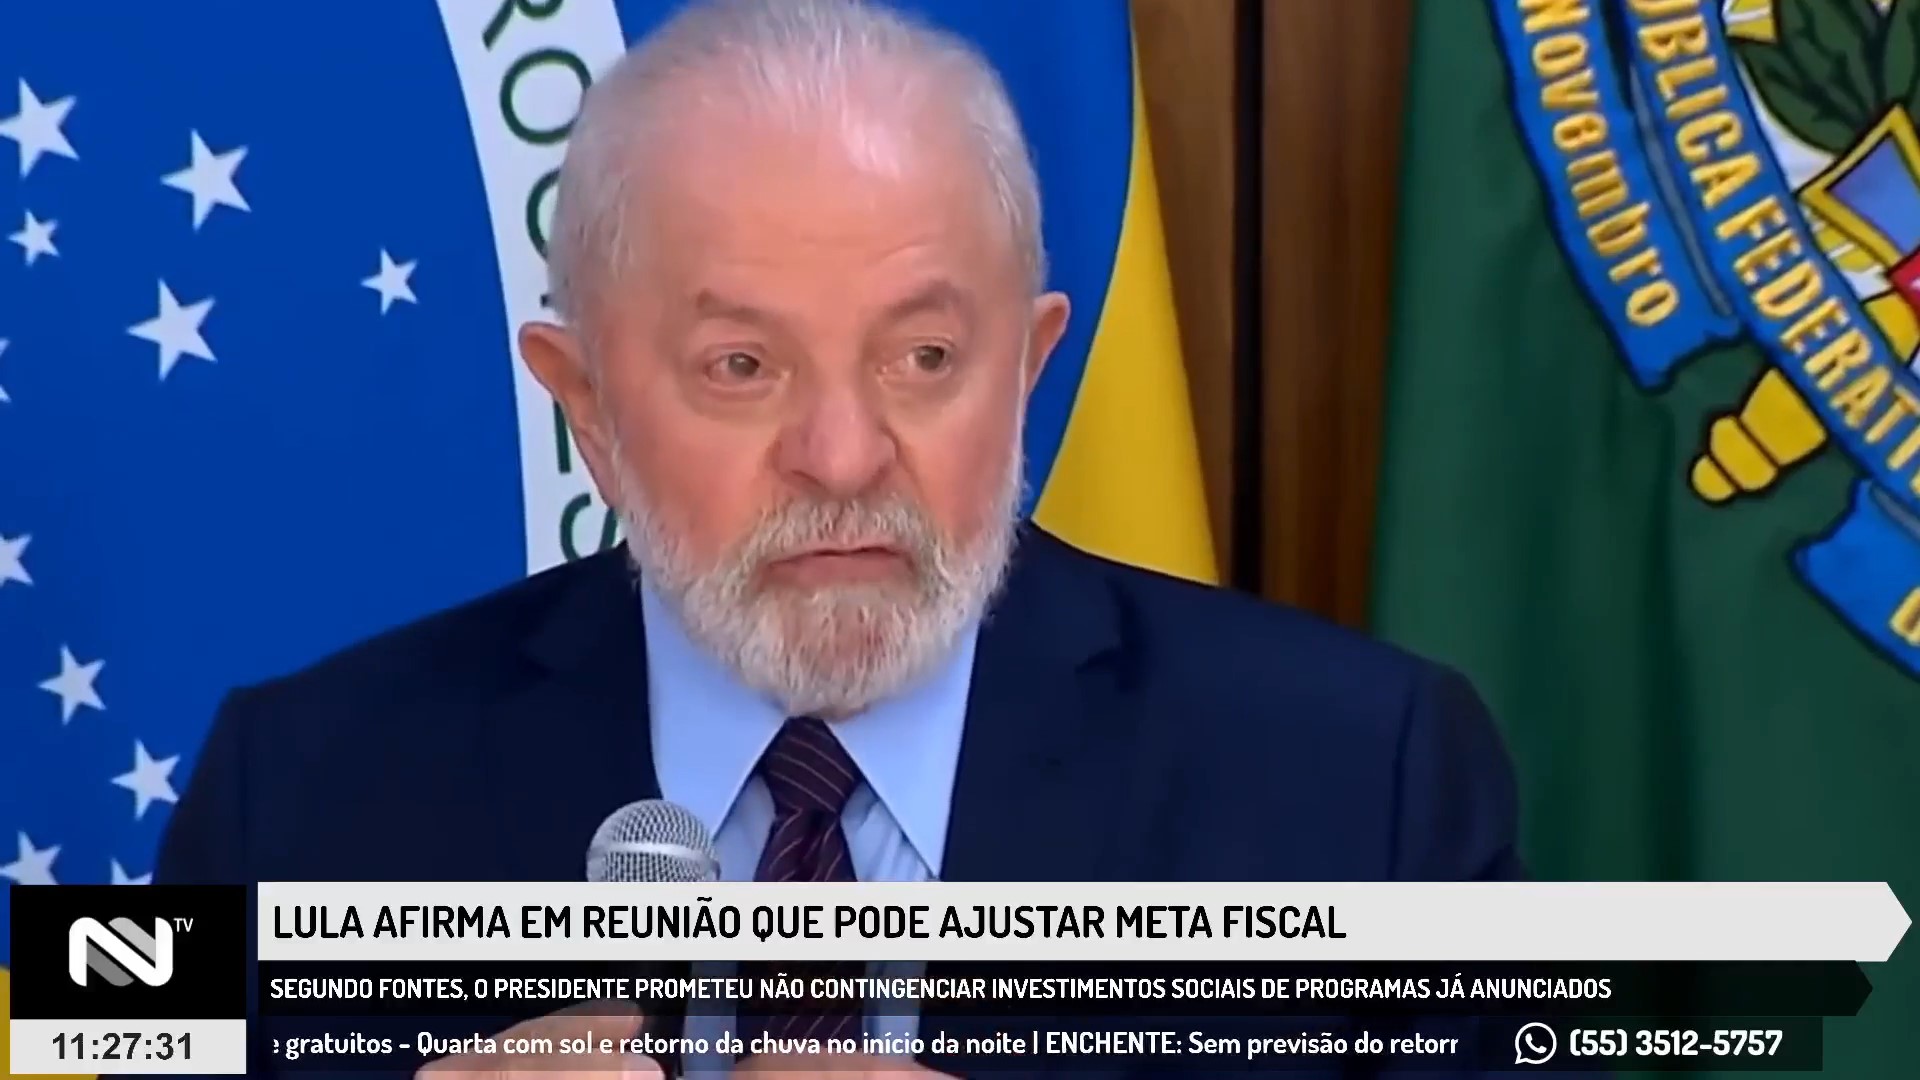 Lula afirma em reunião que pode ajustar meta fiscal